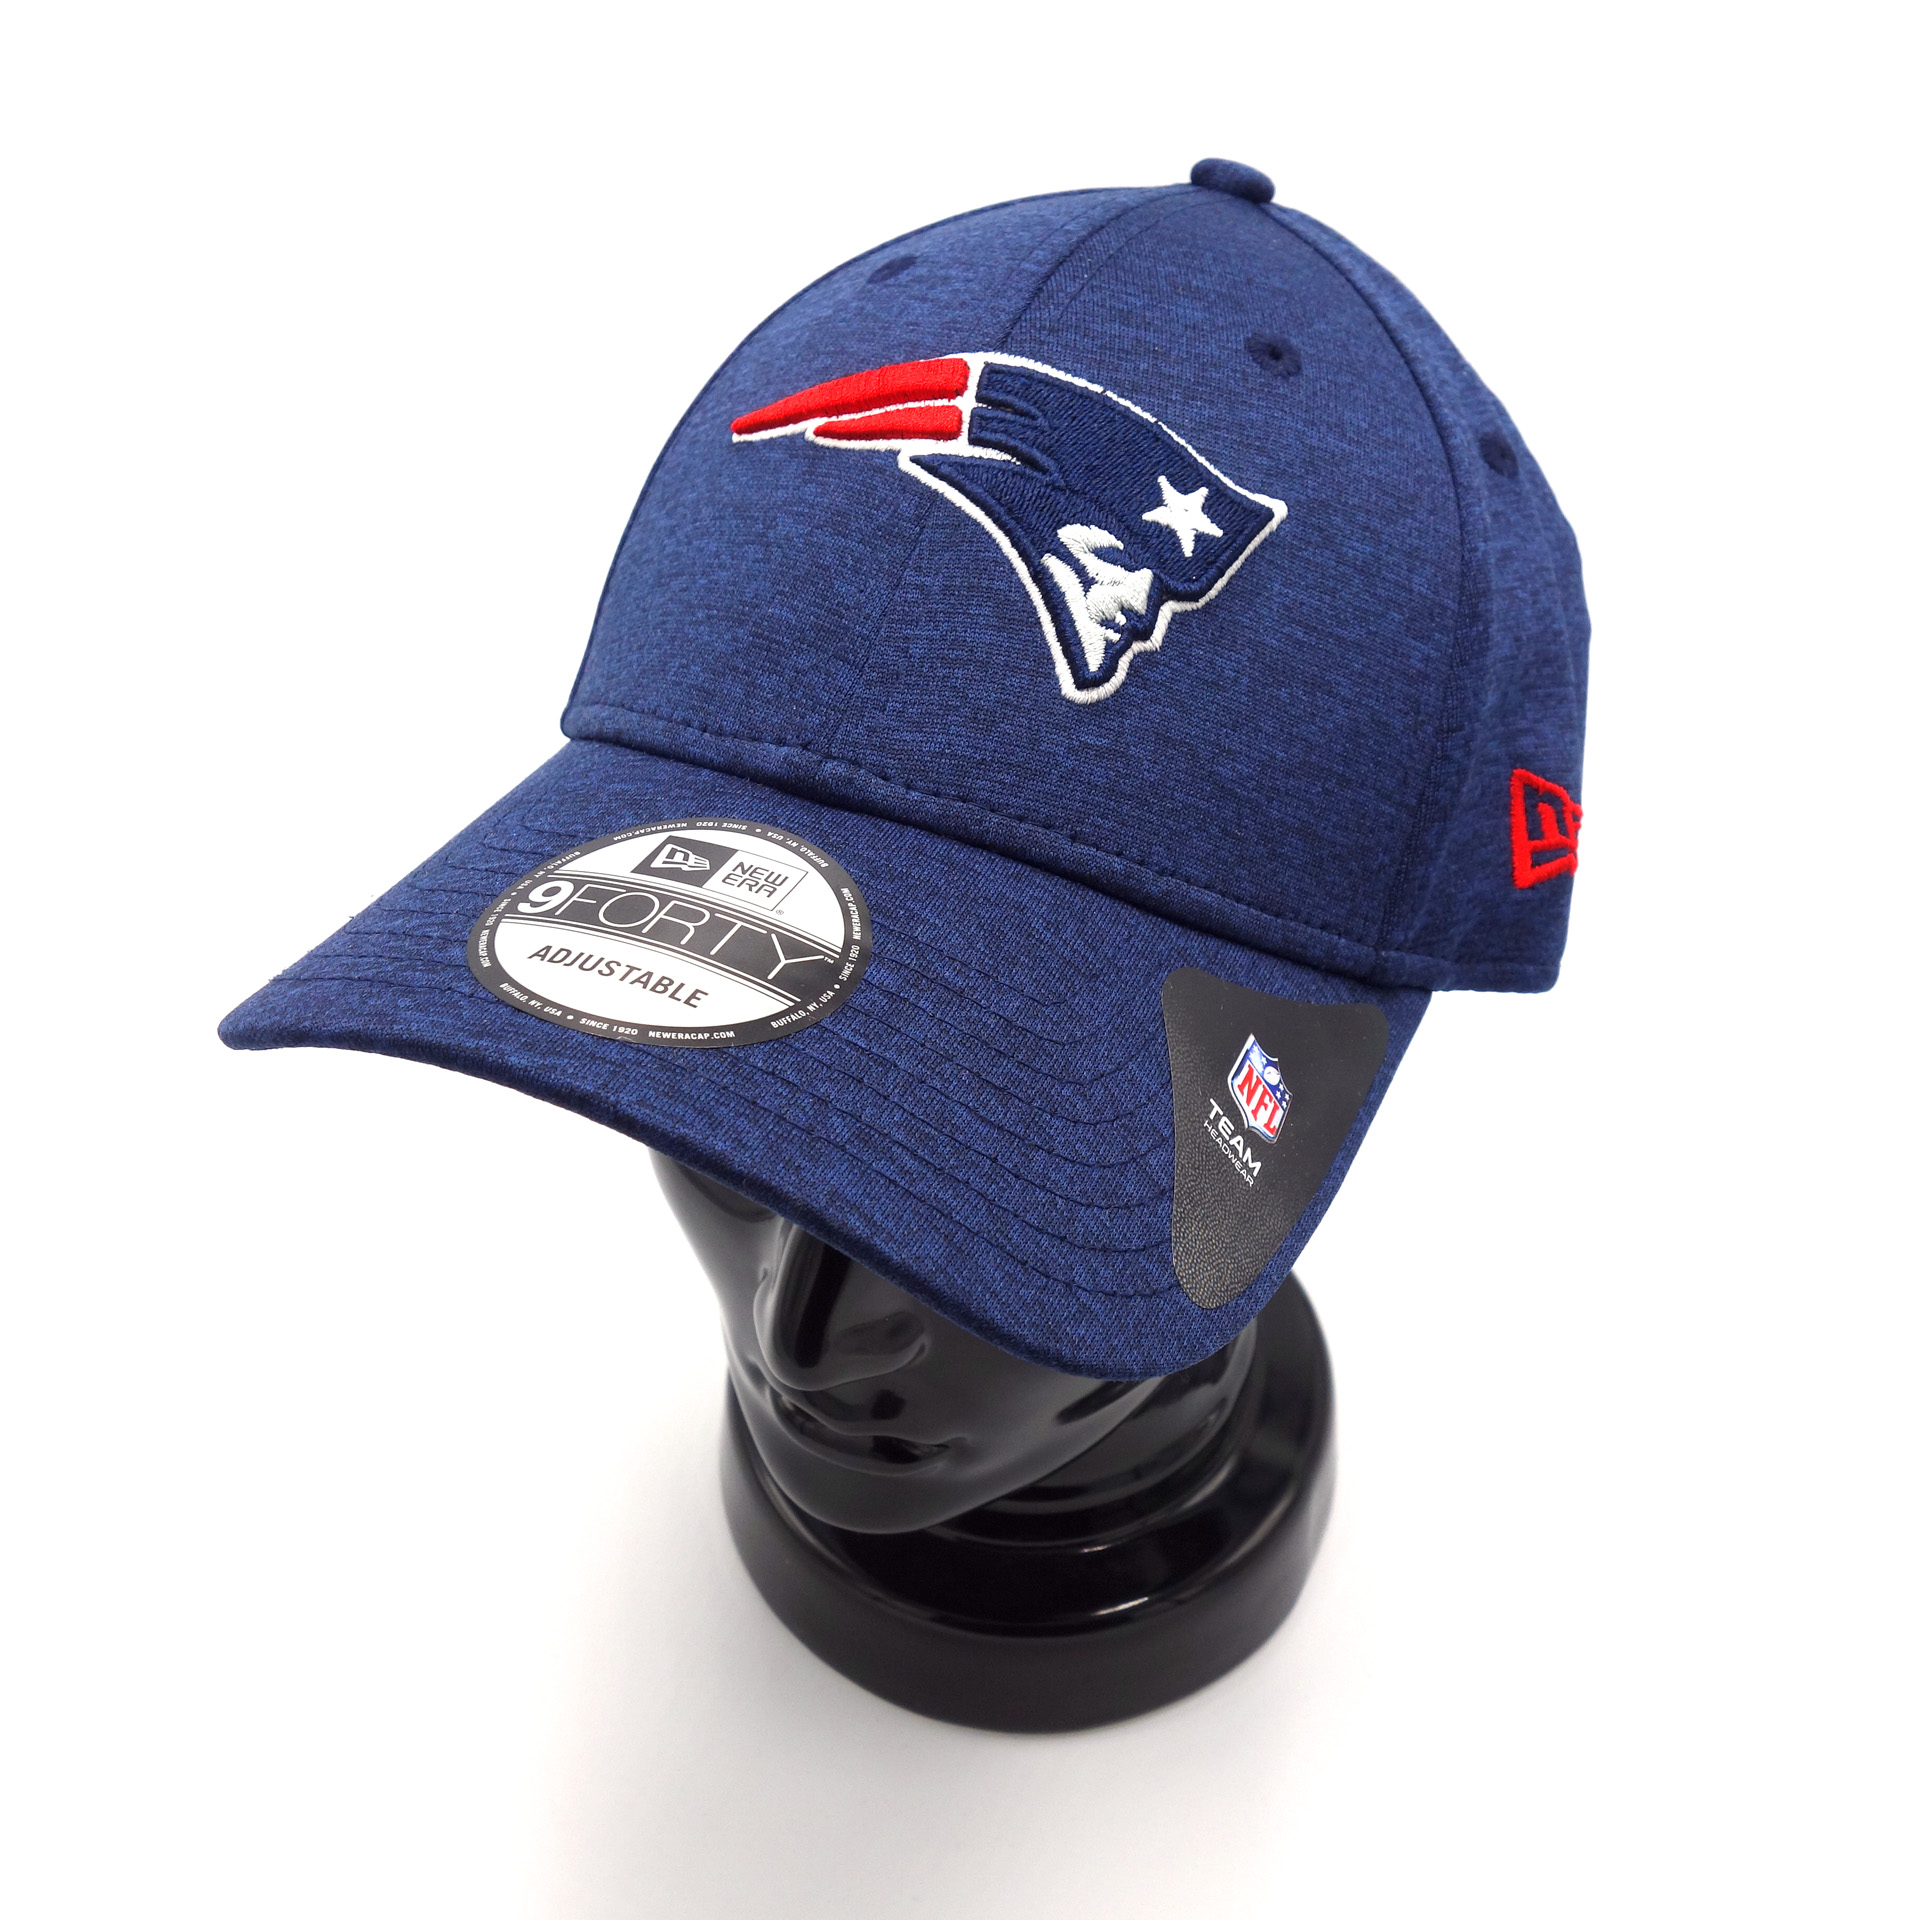 NFL New Era Adjustable Cap New England Patriots Blau